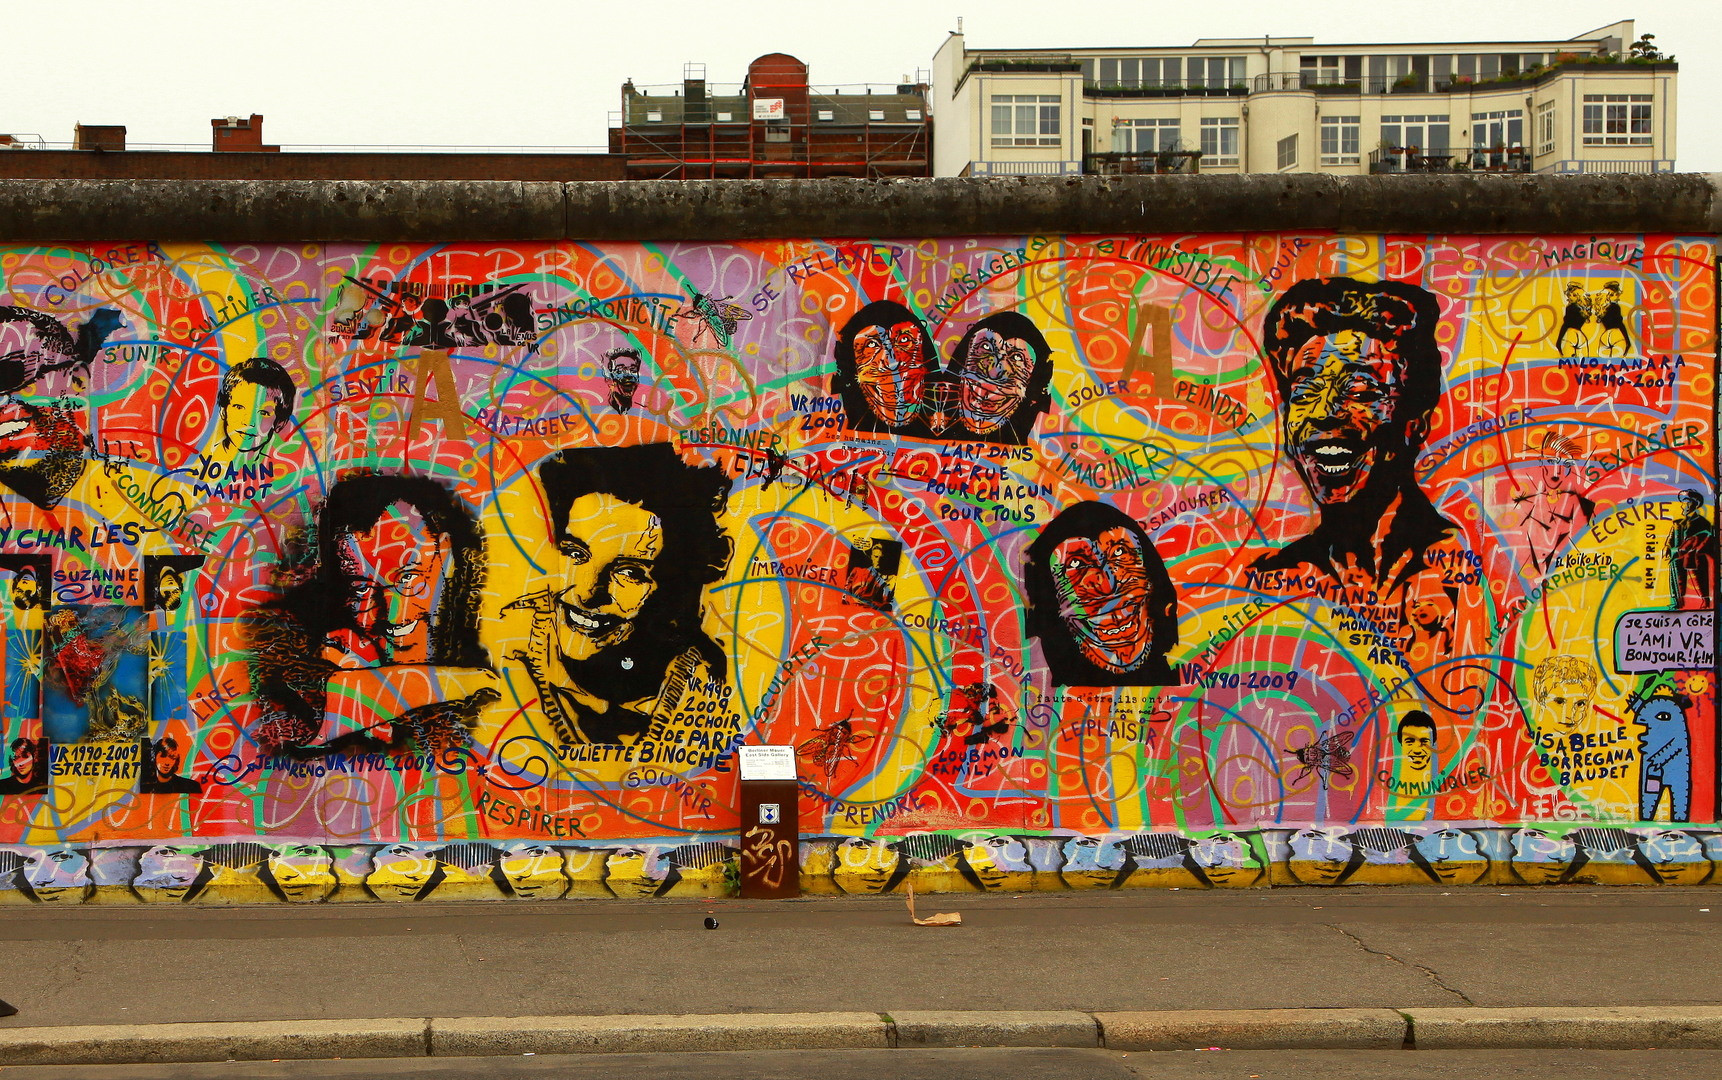 Graffiti Berlin: Khám phá nghệ thuật graffiti đường phố ở Berlin với những tác phẩm độc đáo, táo bạo và sáng tạo. Những bức tường được phủ đầy màu sắc, hình ảnh độc đáo và thông điệp ý nghĩa chắc chắn sẽ khiến bạn say mê và muốn khám phá thêm.